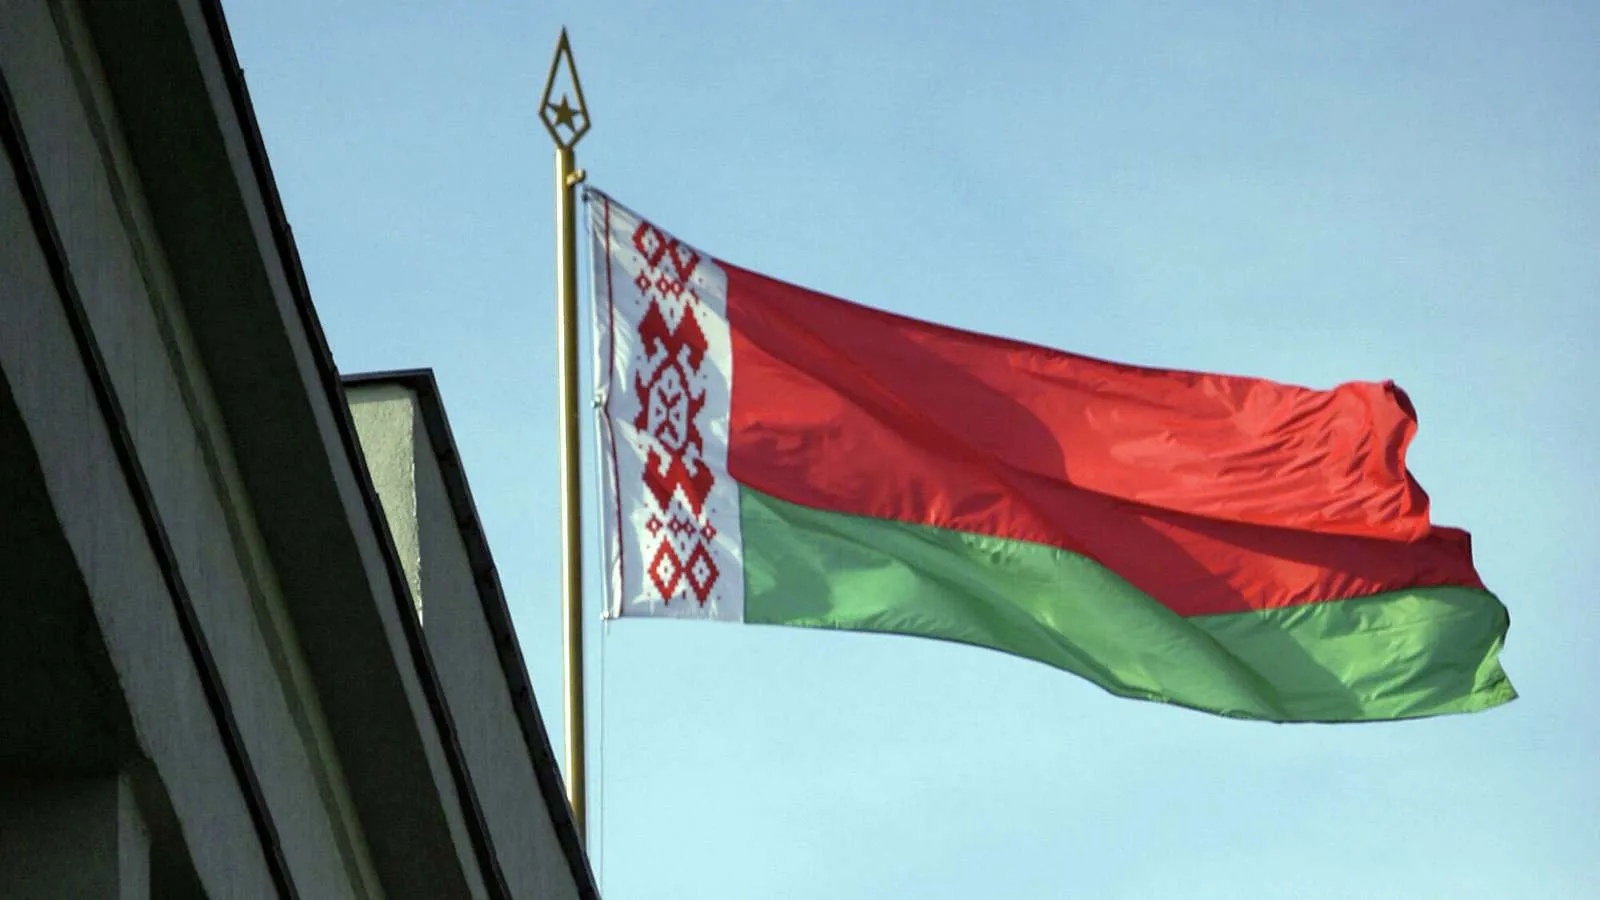 МИД Беларуси объяснил Боррелю, что на самом деле несет угрозу безопасности в Европе